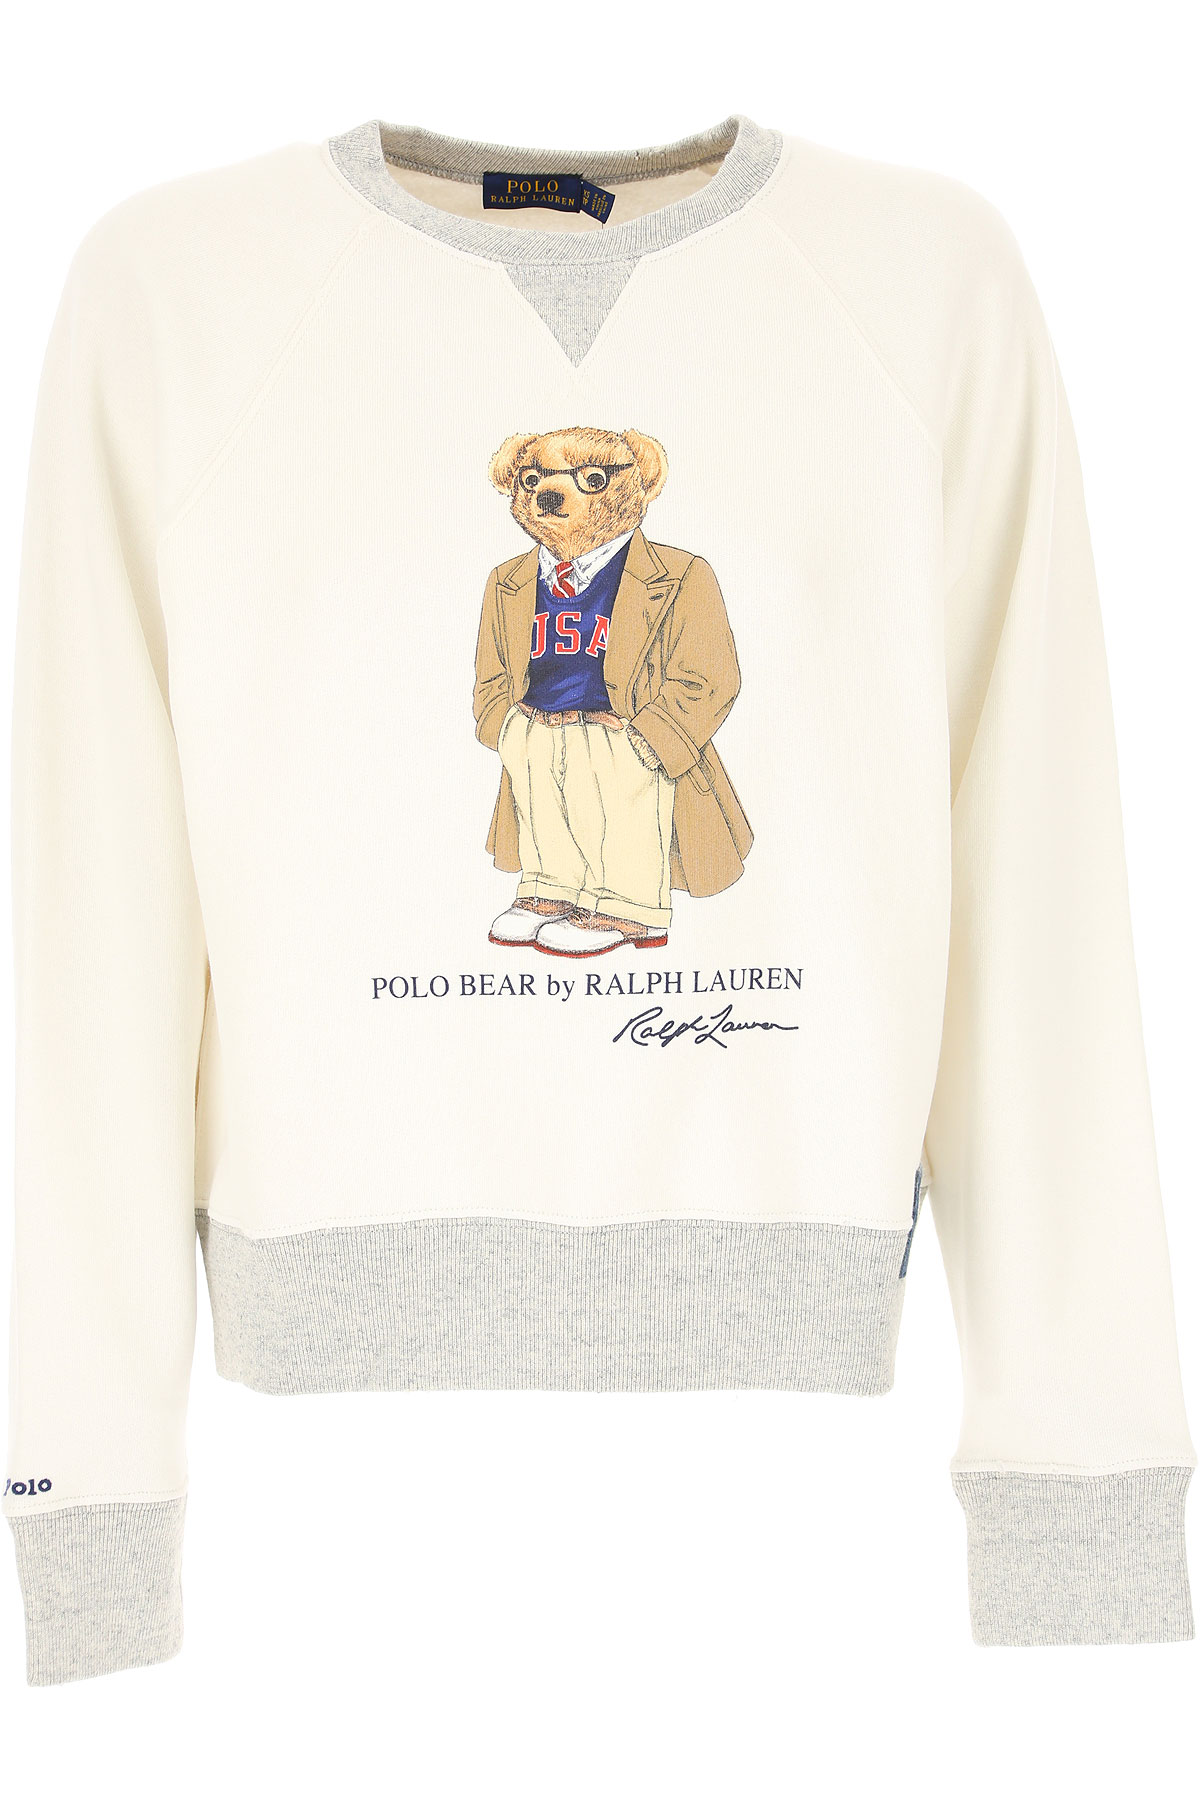 Ralph Lauren Sweatshirt für Damen, Kapuzenpulli, Hoodie, Sweats Günstig im Sale, Weiss, Baumwolle, 2017, 40 L M XS